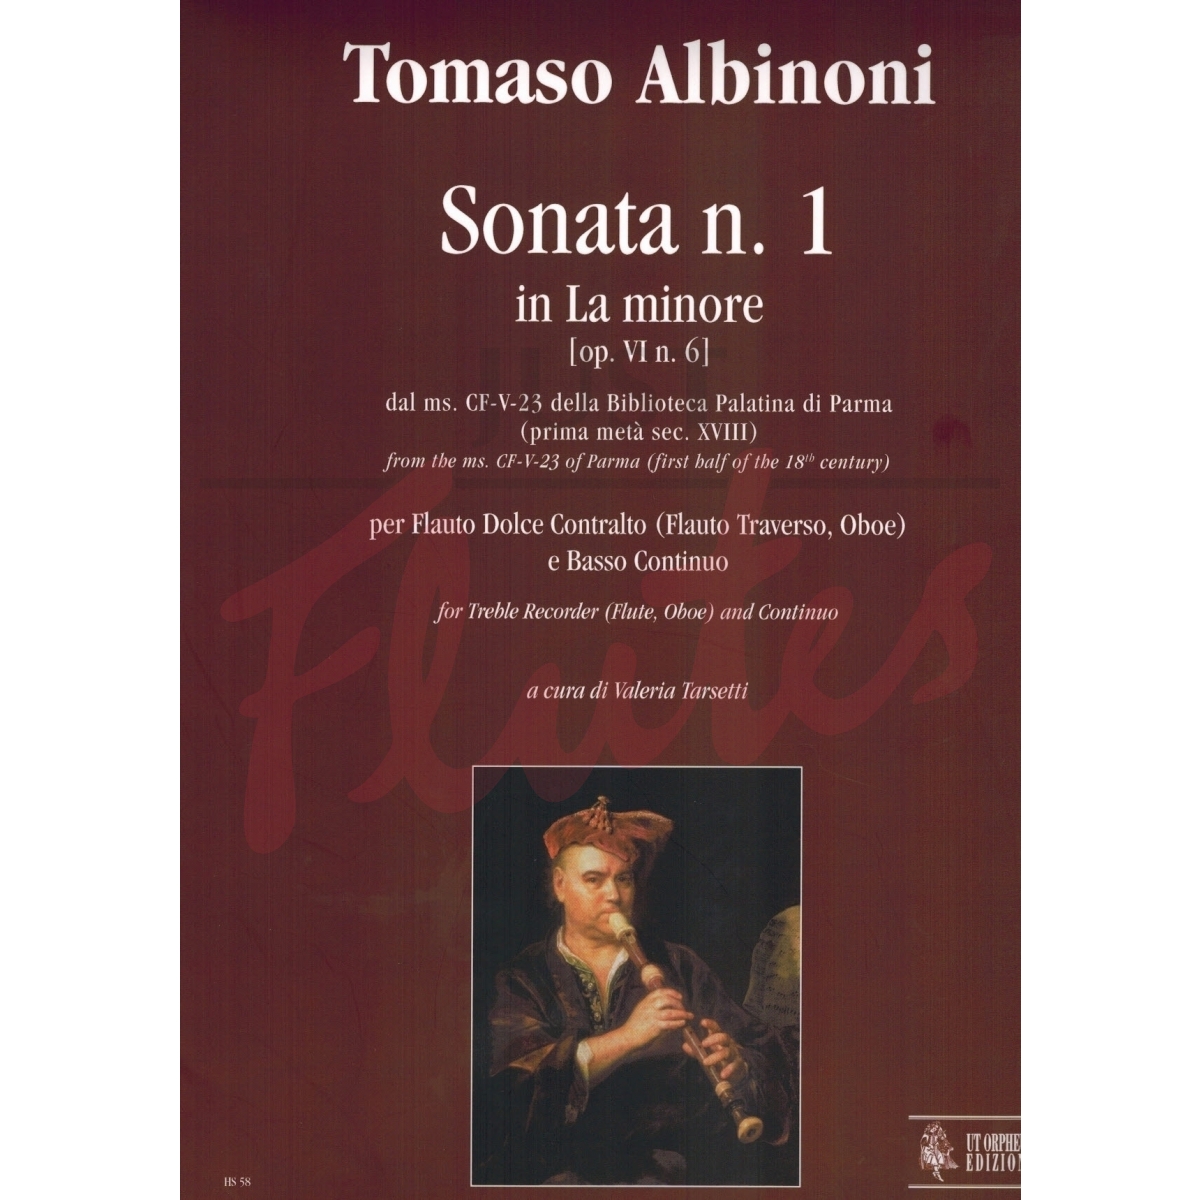 Sonata No 1 in A minor for Treble Recorder or Flute